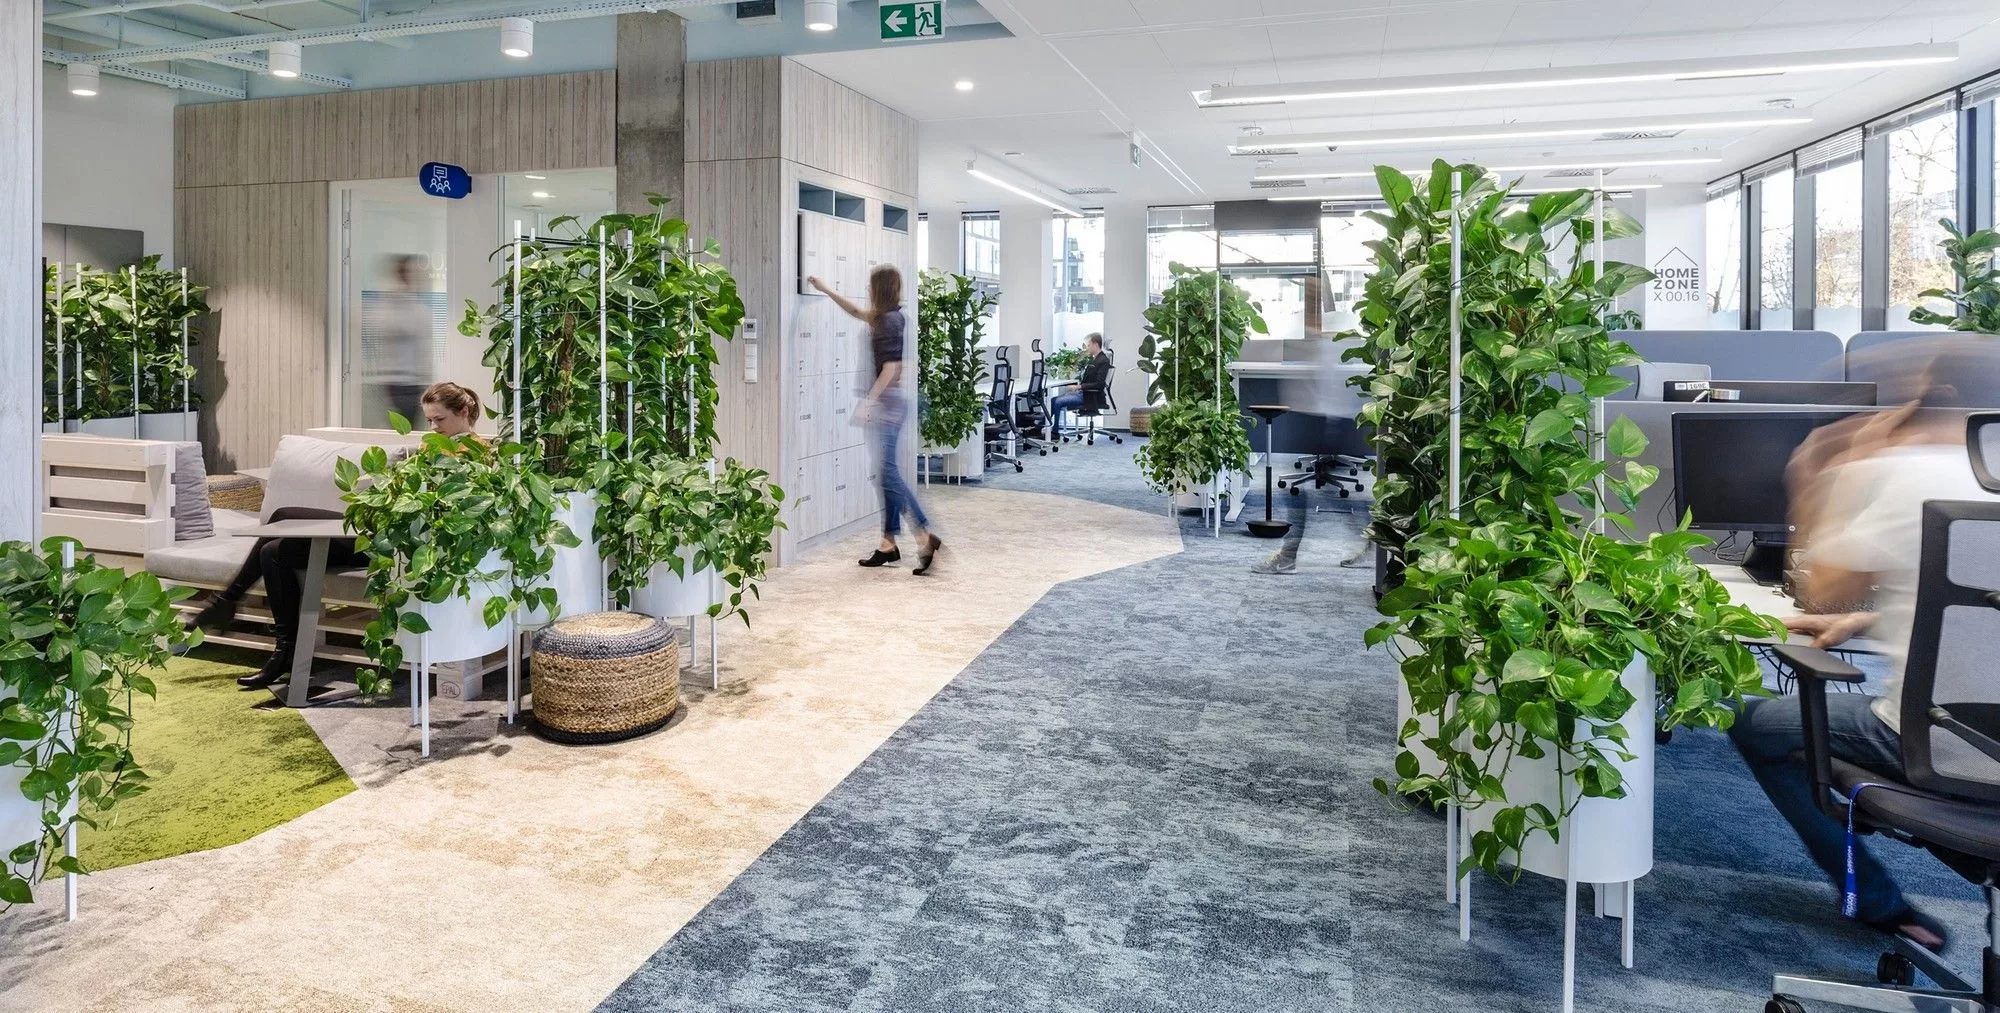 8. Thiết kế cây xanh trong văn phòng - Topdesign